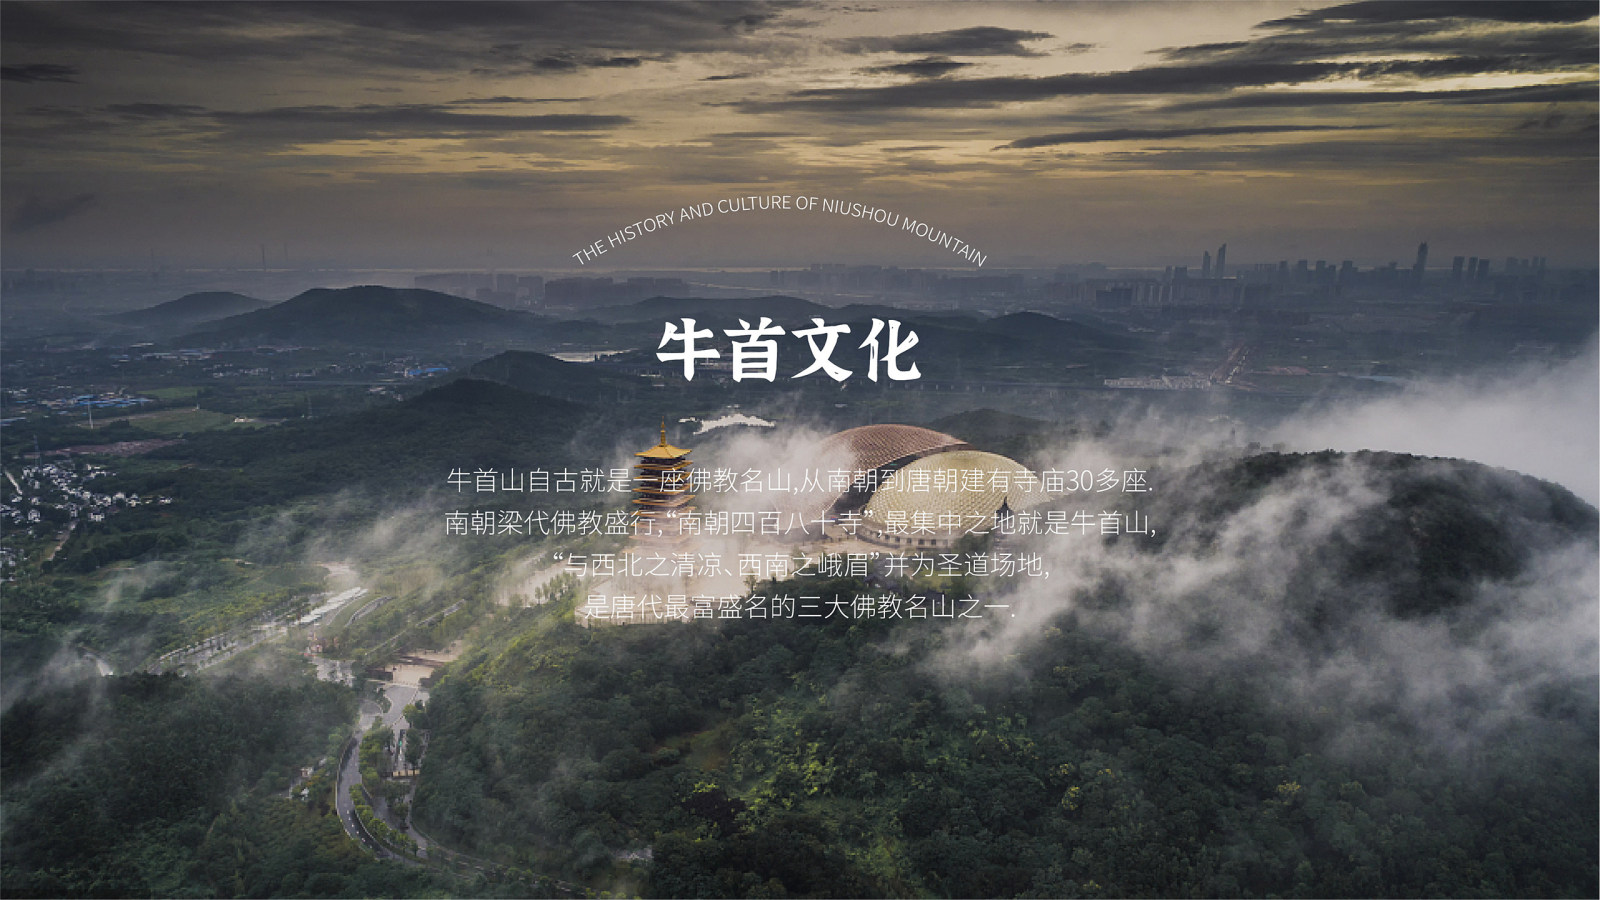 中国南京牛首山佛教文化发展基金会品牌设计